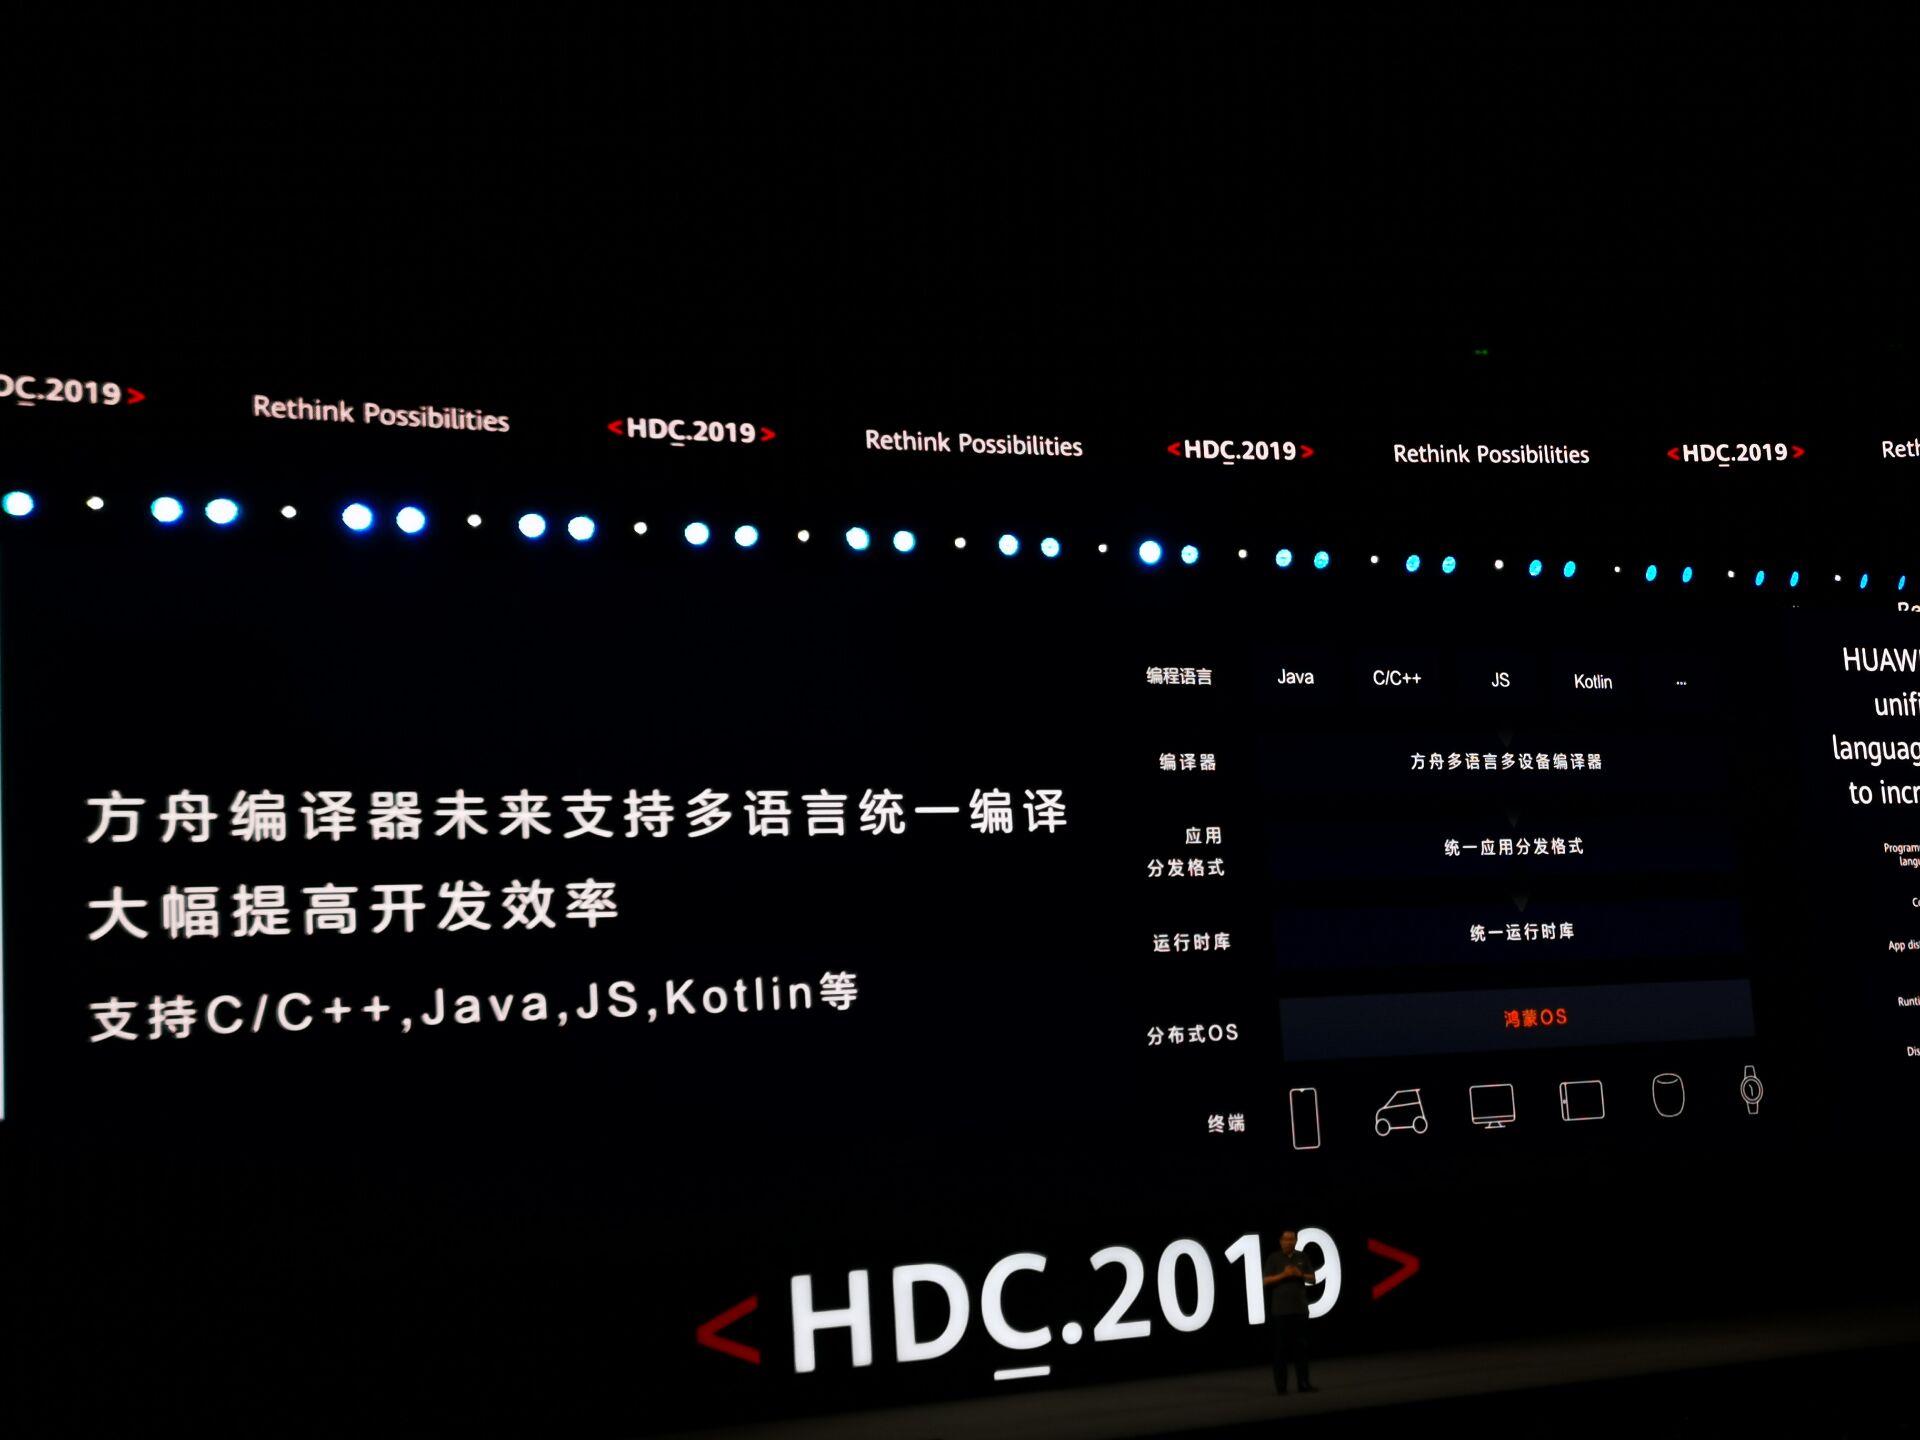 Huawei chính thức ra
mắt hệ điều hành riêng với tên gọi Harmony OS